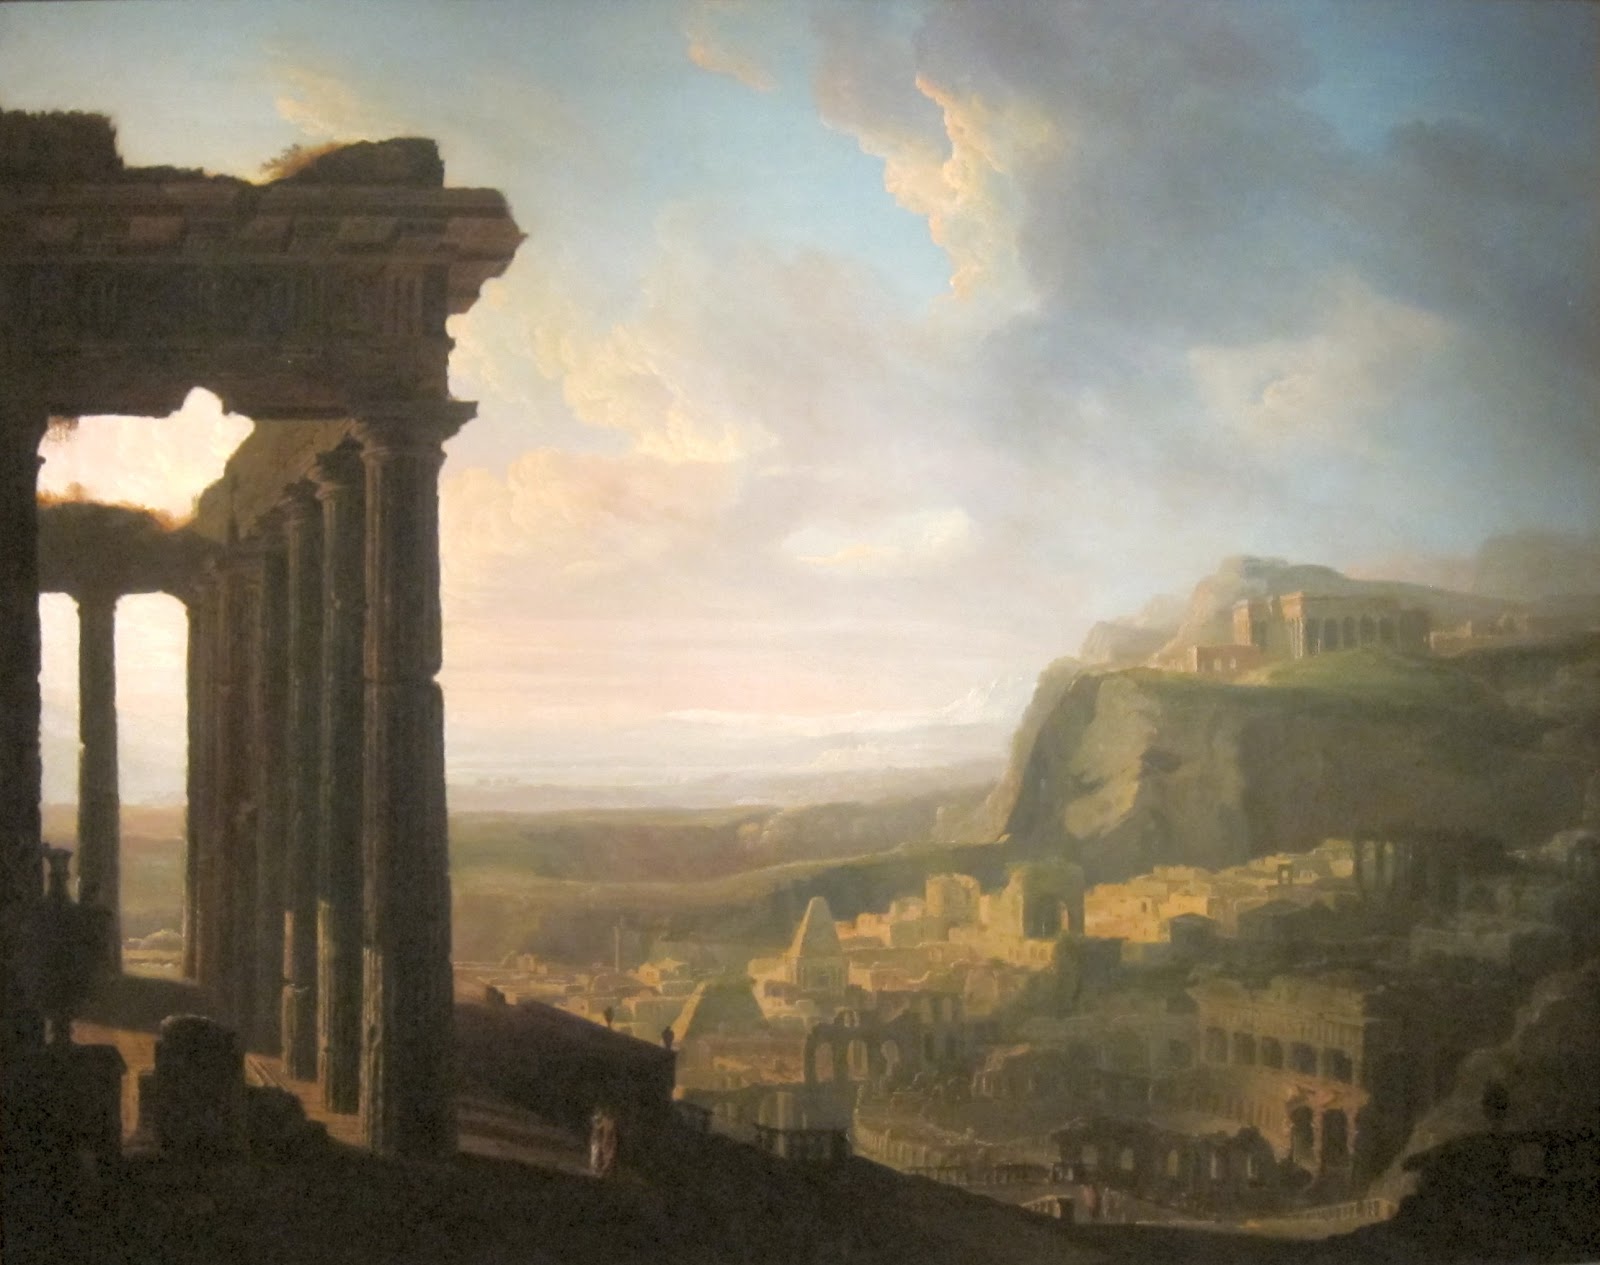 John+Martin+Landscape-1789-1854 (39).jpg